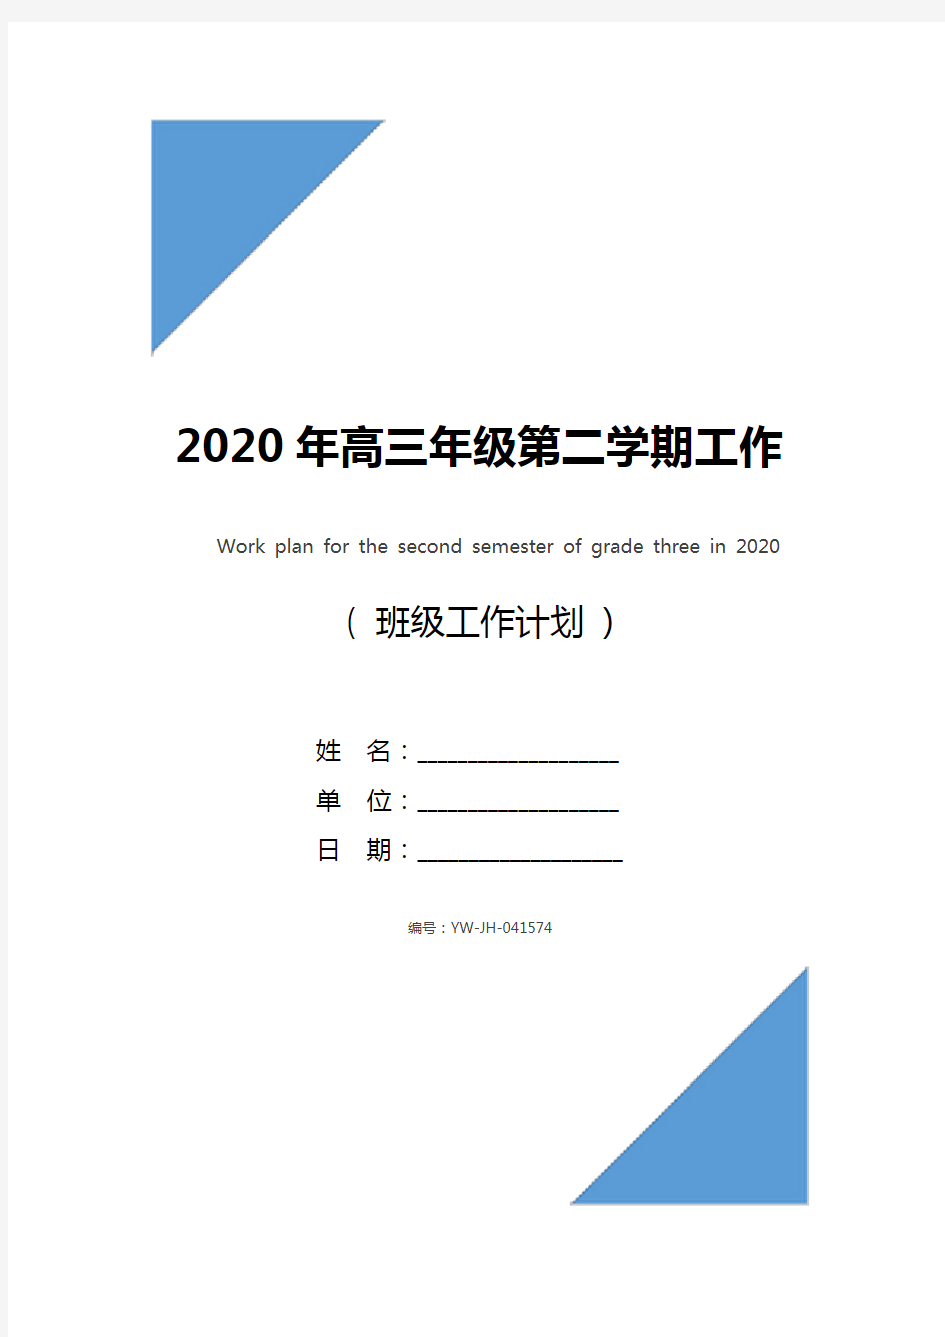 2020年高三年级第二学期工作计划